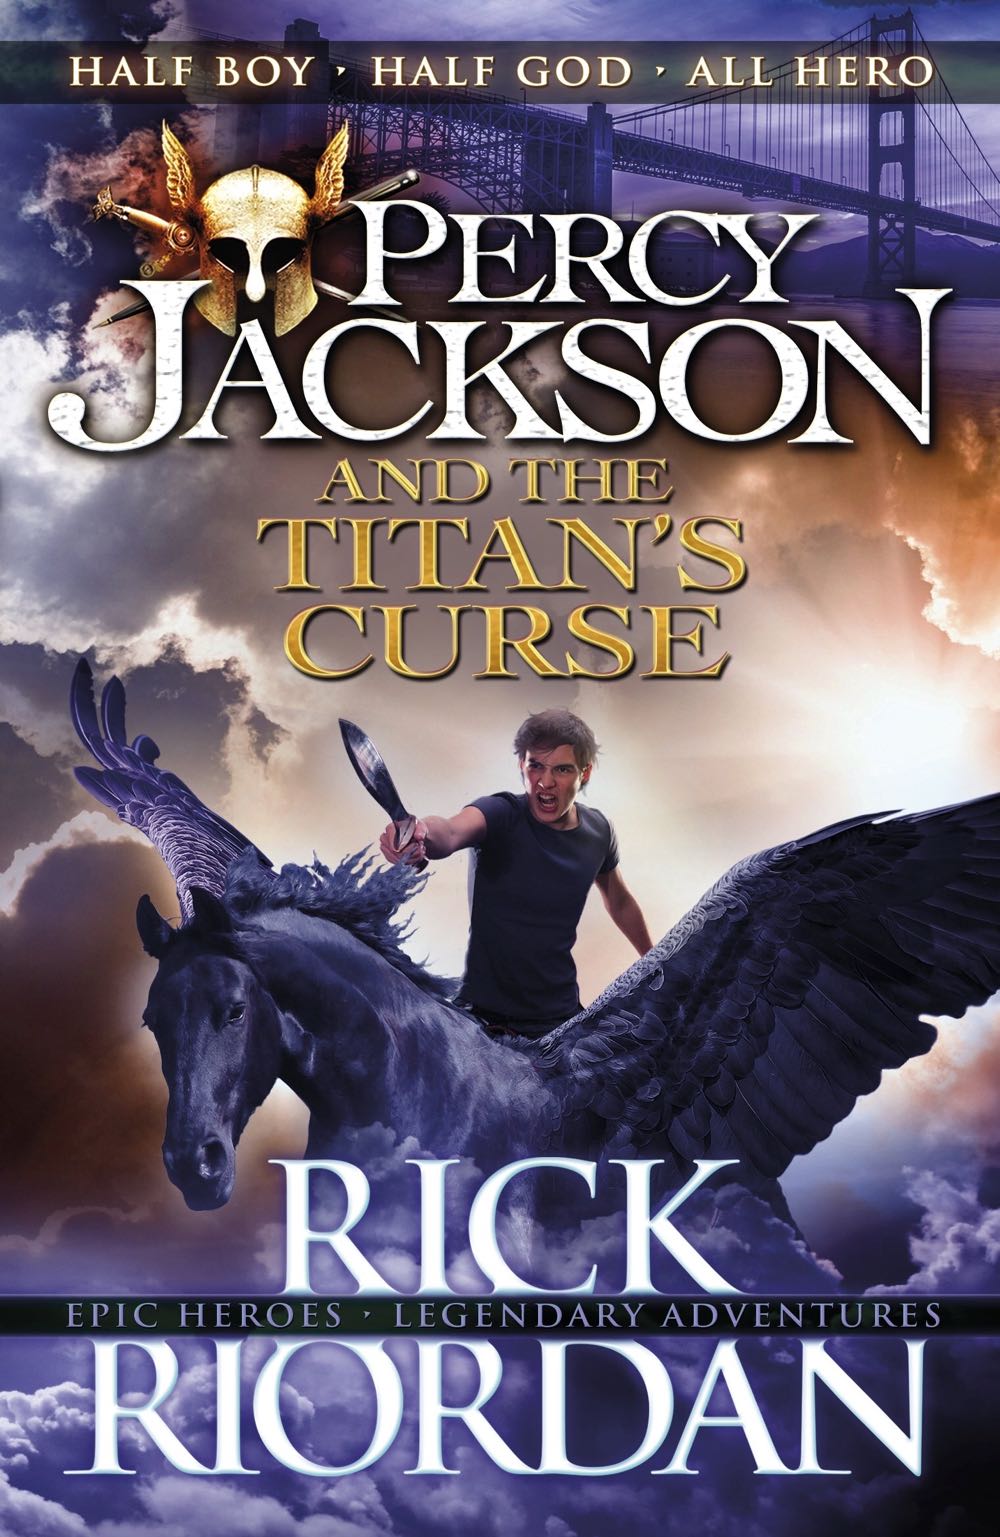 Percy Jackson 3: The Titan’s Curse - Rick Riordan (Hyperion - Paperback) book collectible [Barcode 9781423101482] - Main Image 3